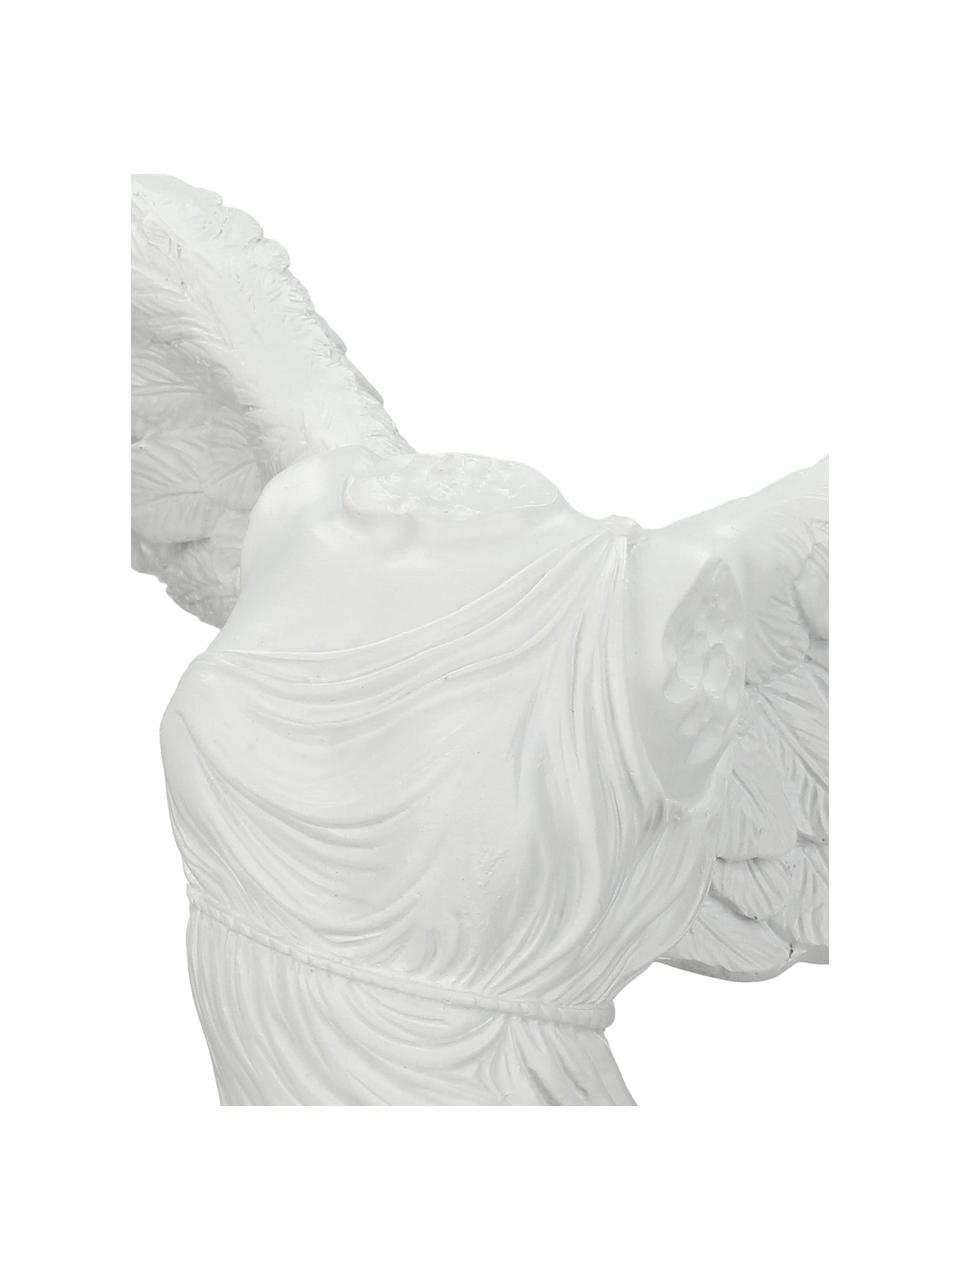 Deko-Objekt Dress, Polyresin, Weiß, 27 x 38 cm